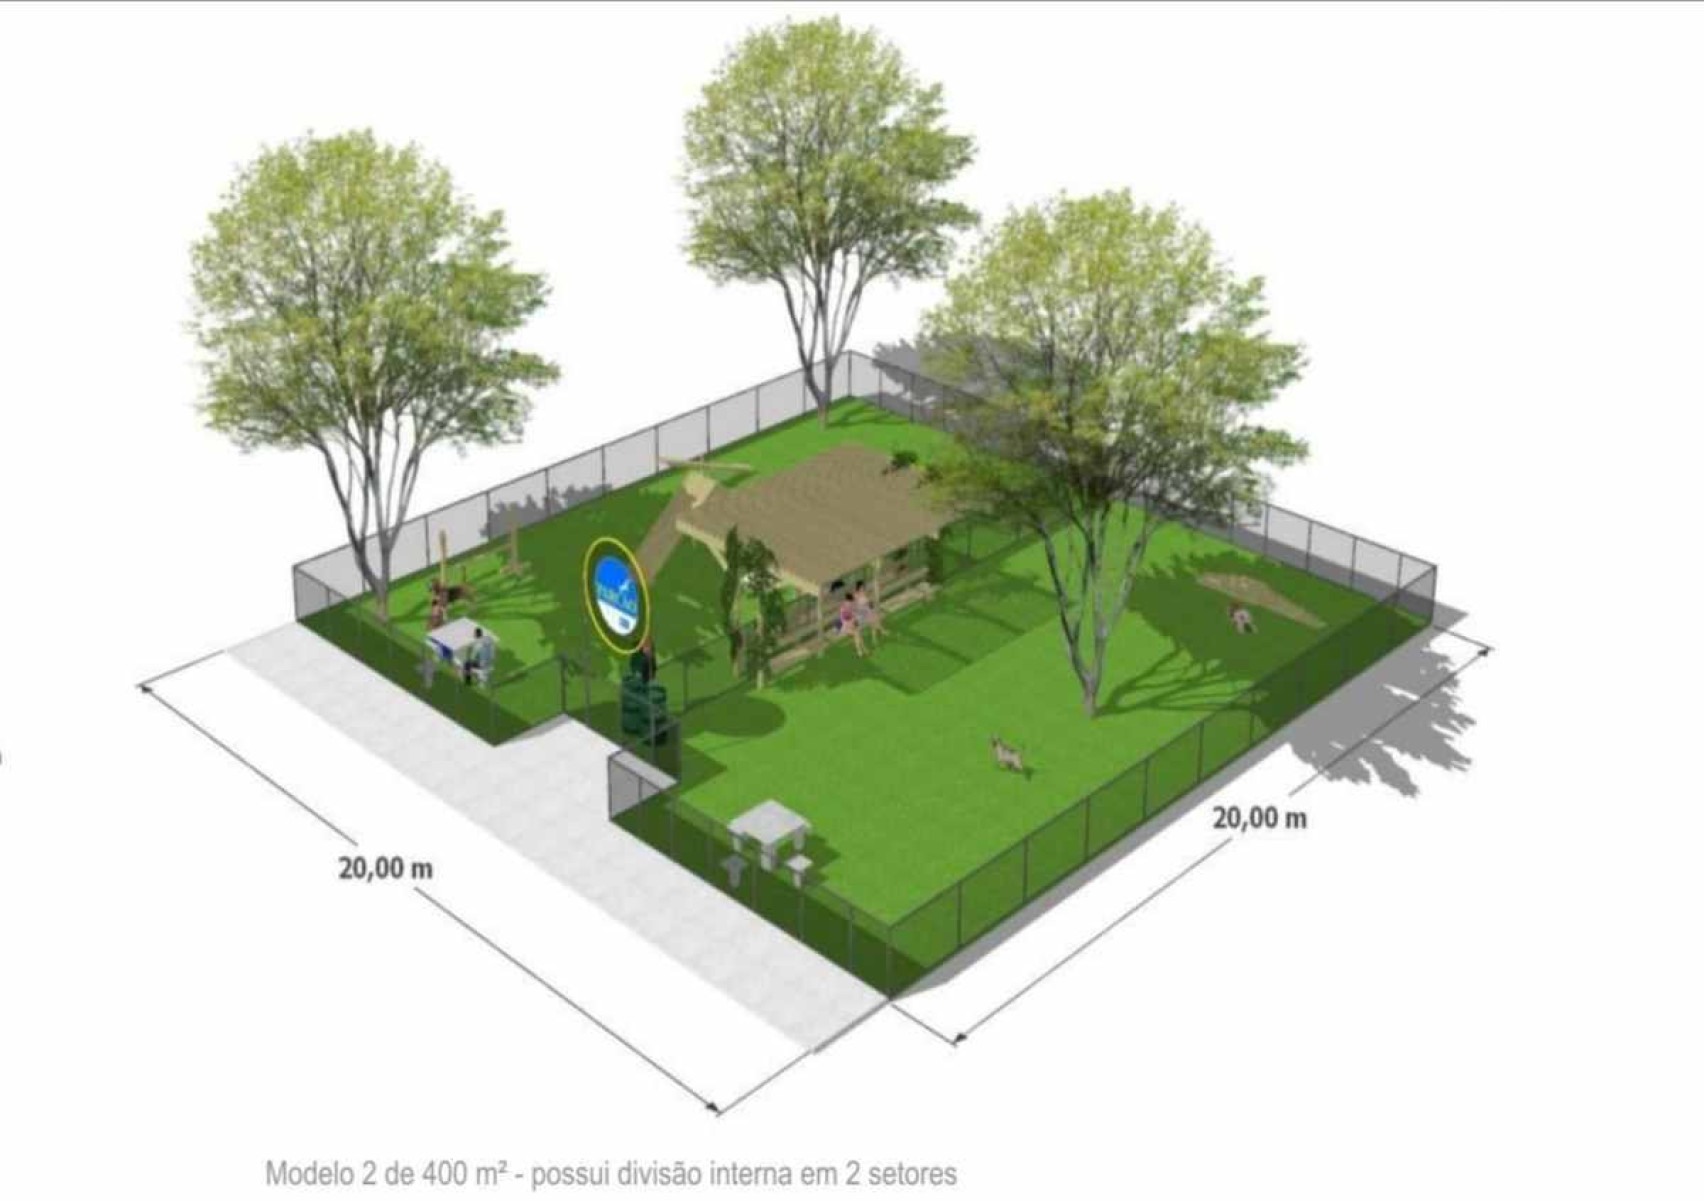 O menor parque contará com 400 m² e dimensões de 20 m x 20 m